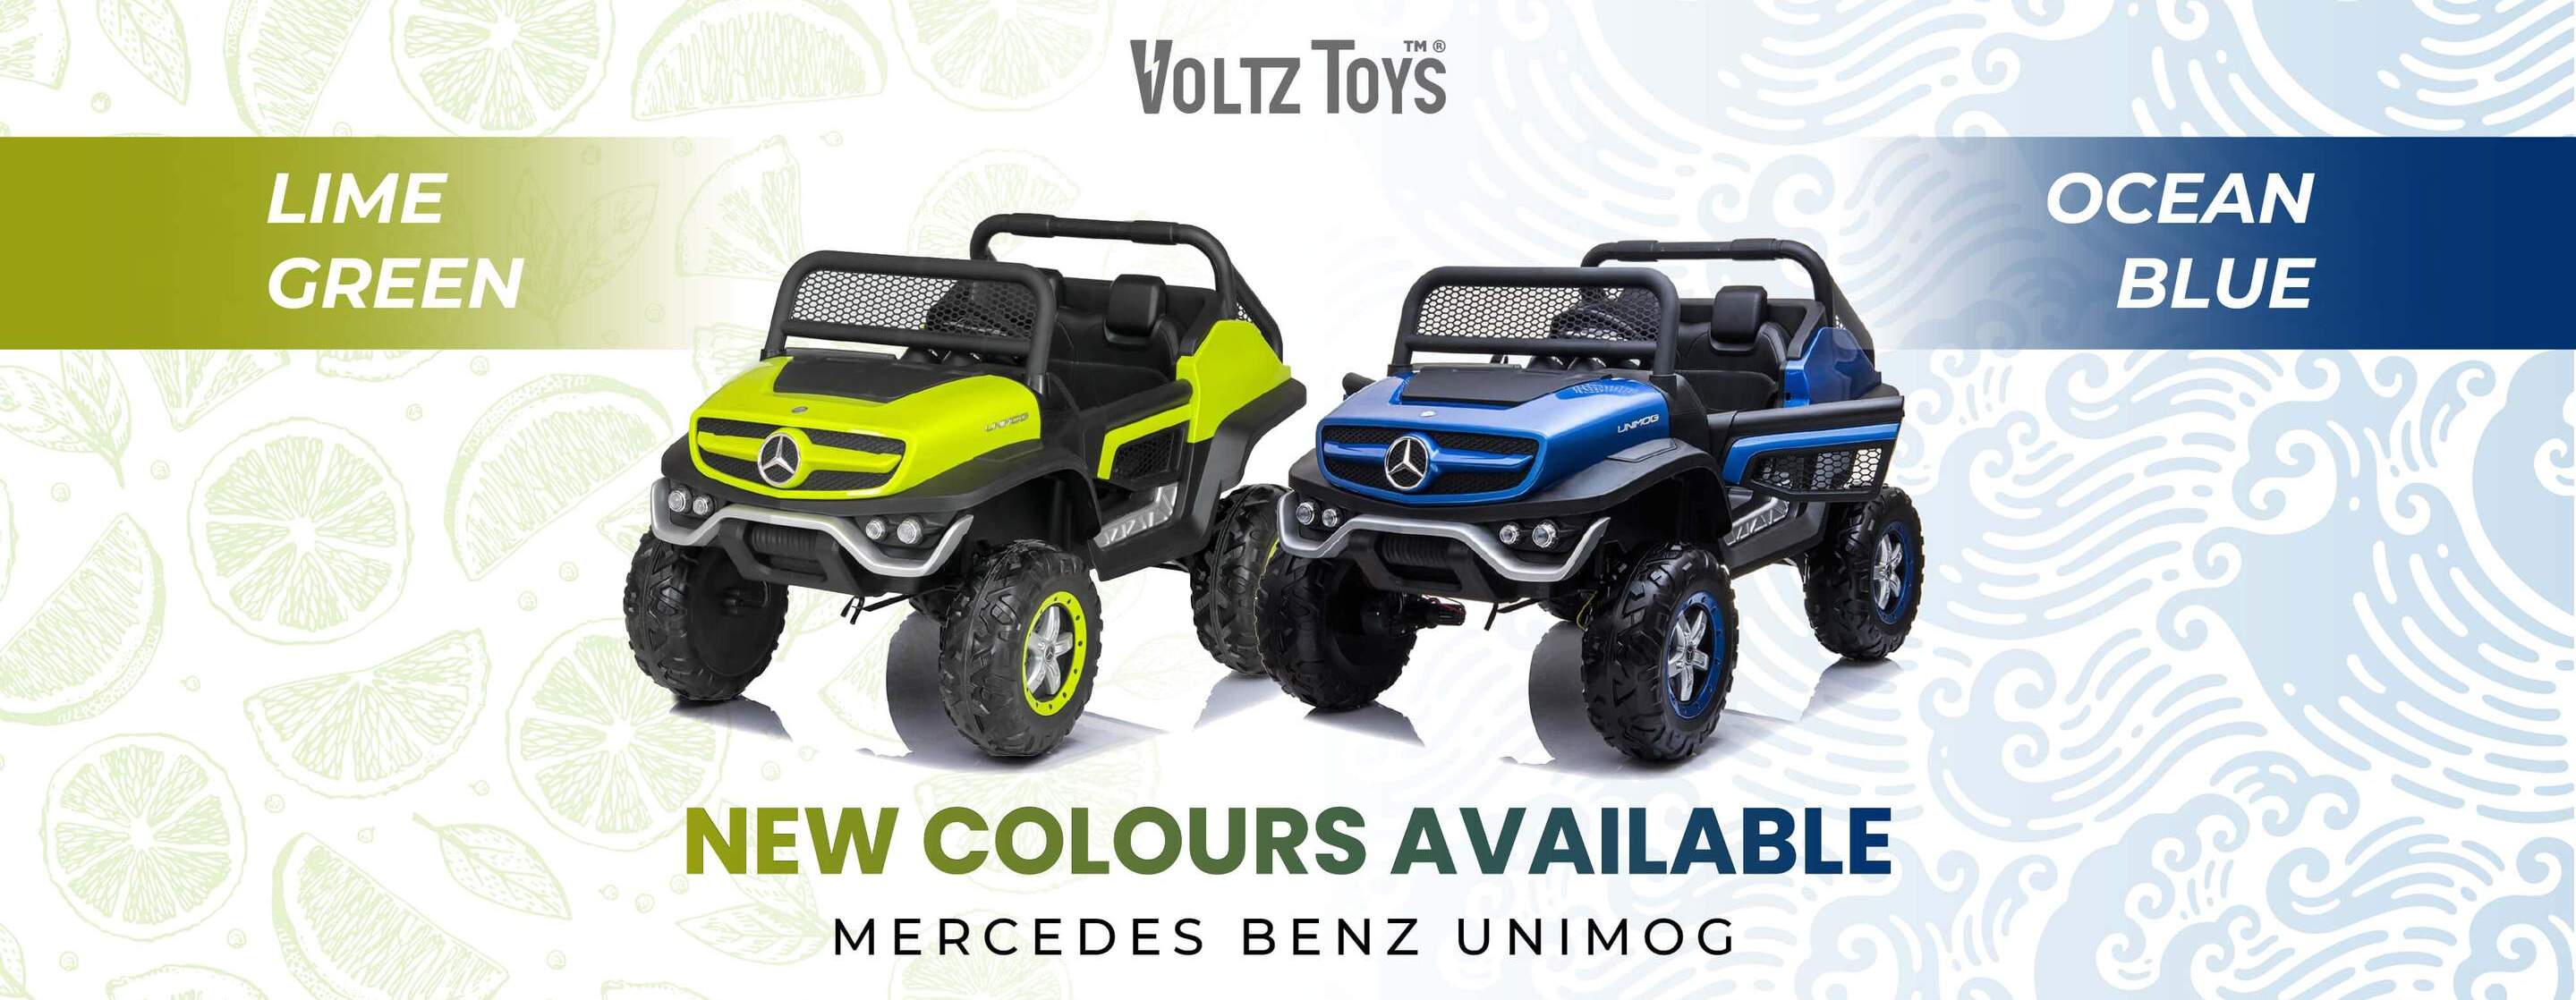 Mercedes-Benz Unimog 2 places, Voltz Toys